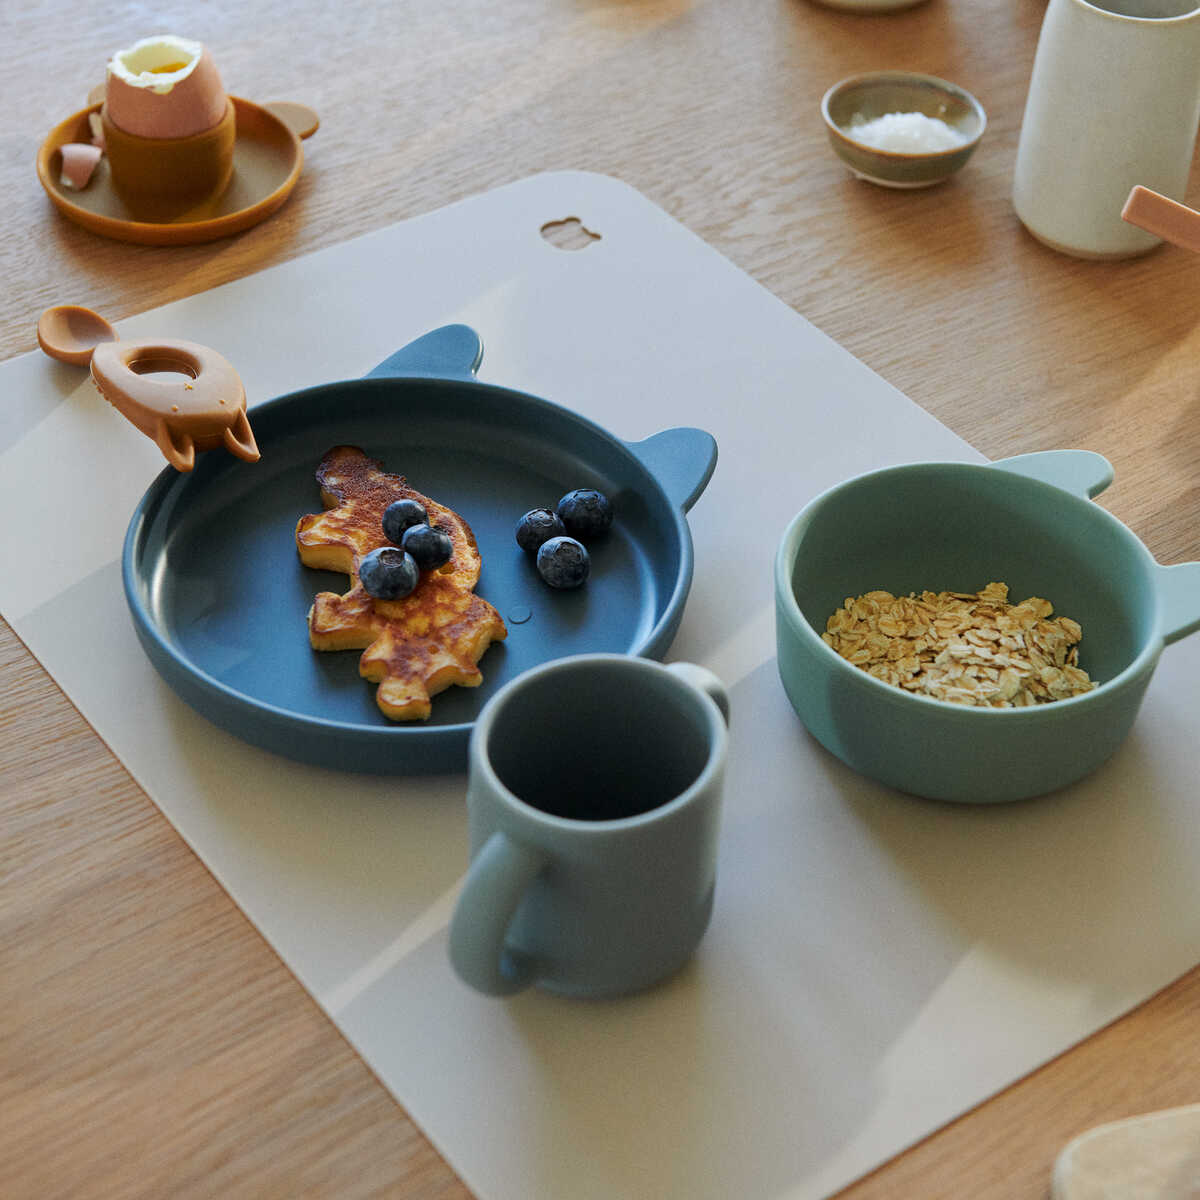 Набор детской посуды Liewood из силикона "Кролик", мульти микс с голубым, baby